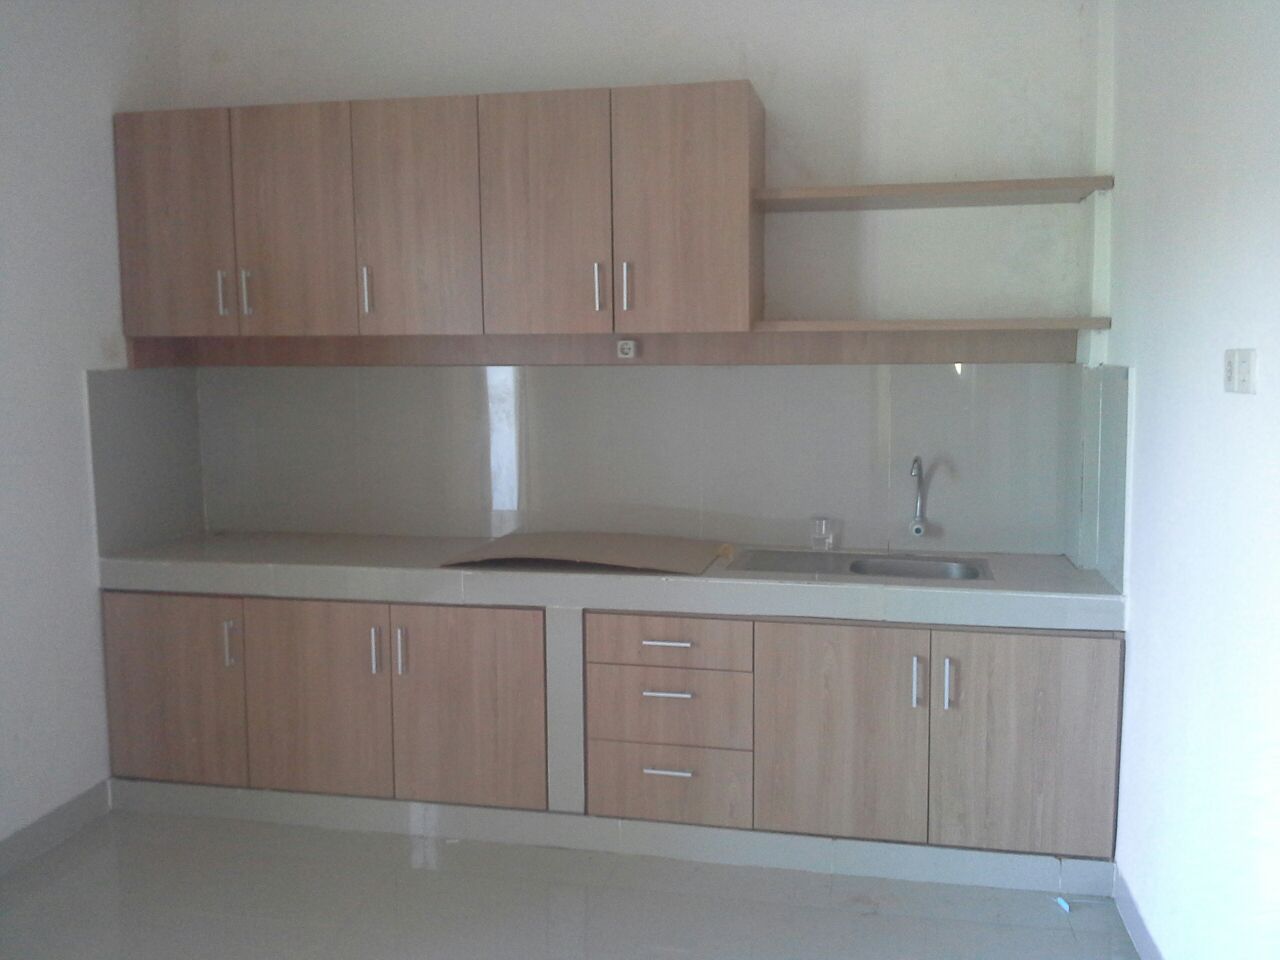 Project Desain Apartment IB Ariwangsa, Denpasar, Studio JAJ Studio JAJ トロピカルデザインの キッチン